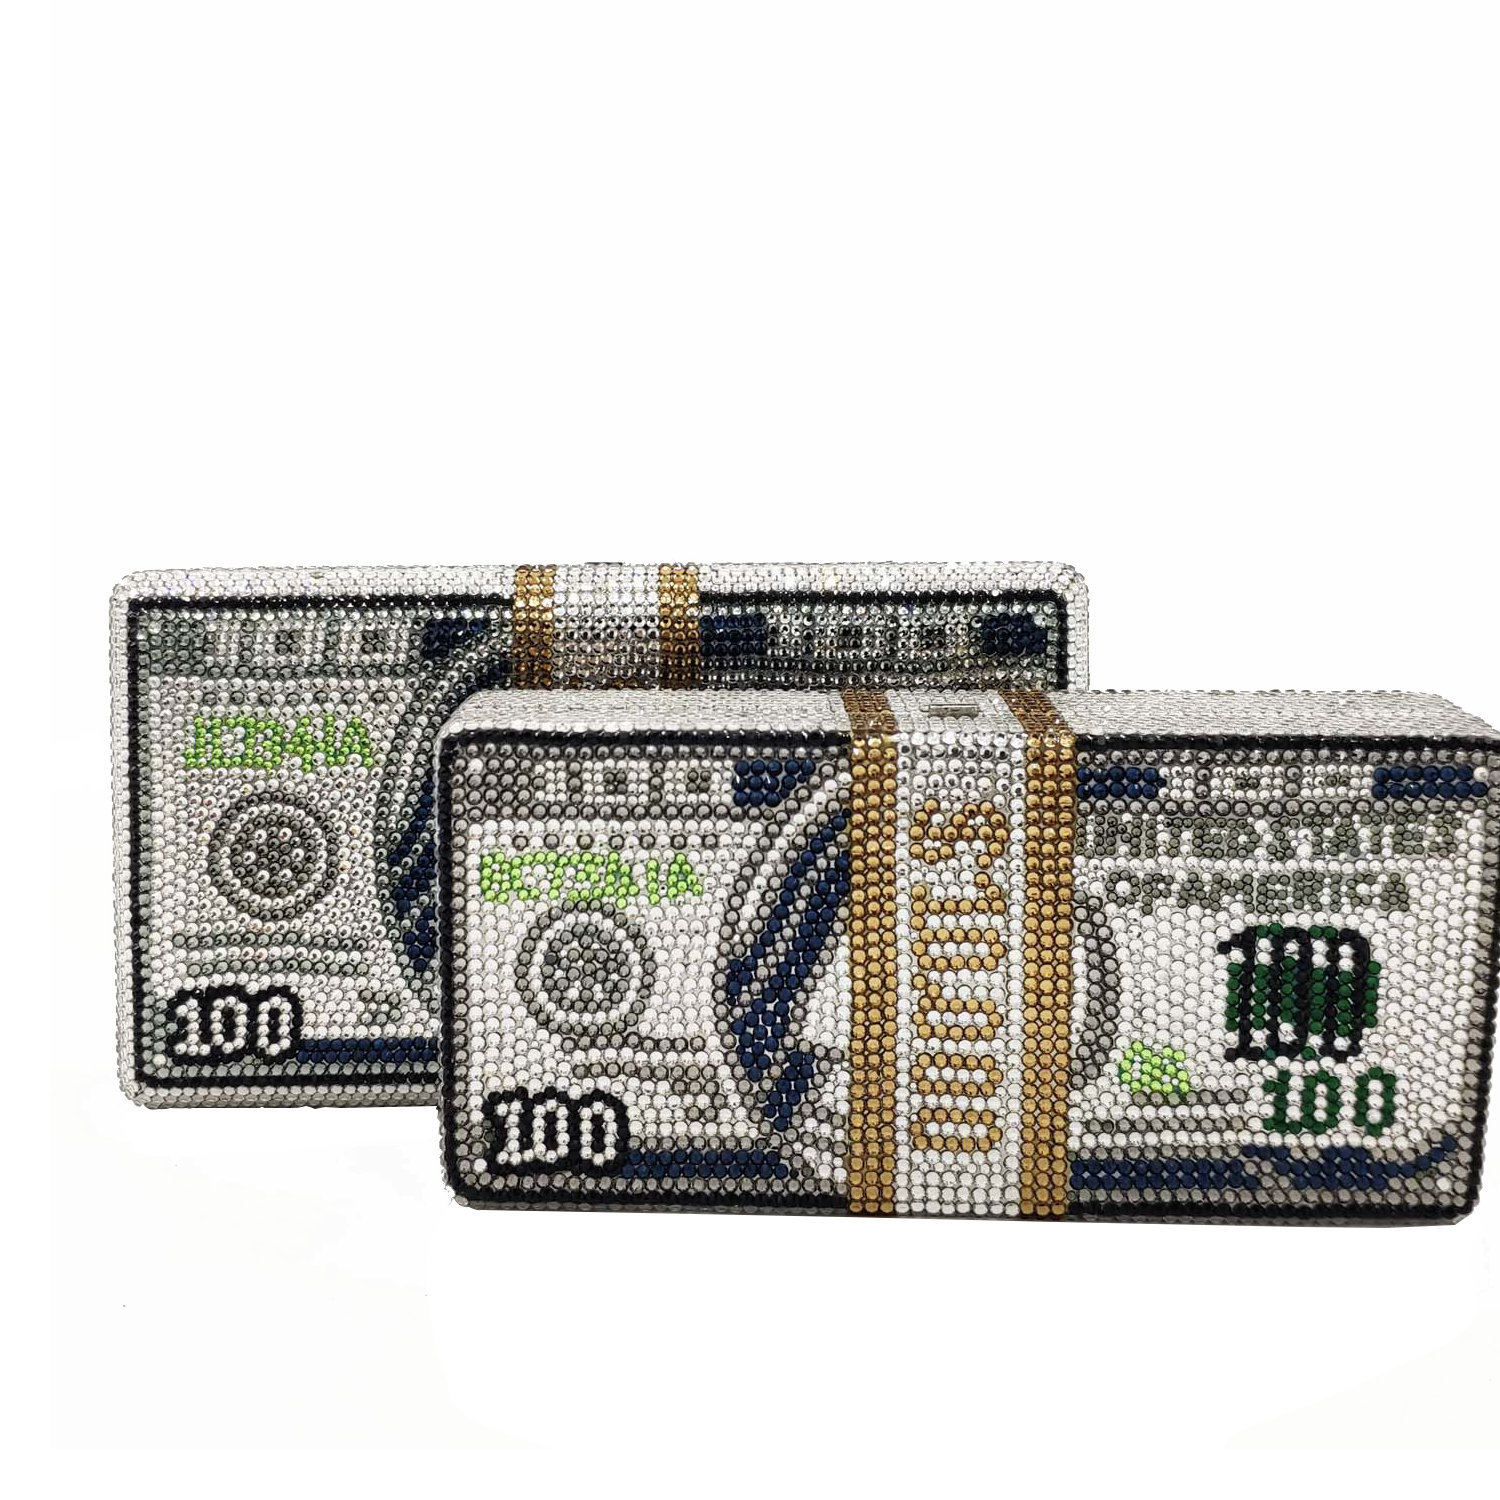 U.S. Ten Thousand Dollar Bill - 1934 $10000 USD Treasury Note Weekender  Tote Bag by Serge Averbukh - Pixels Merch